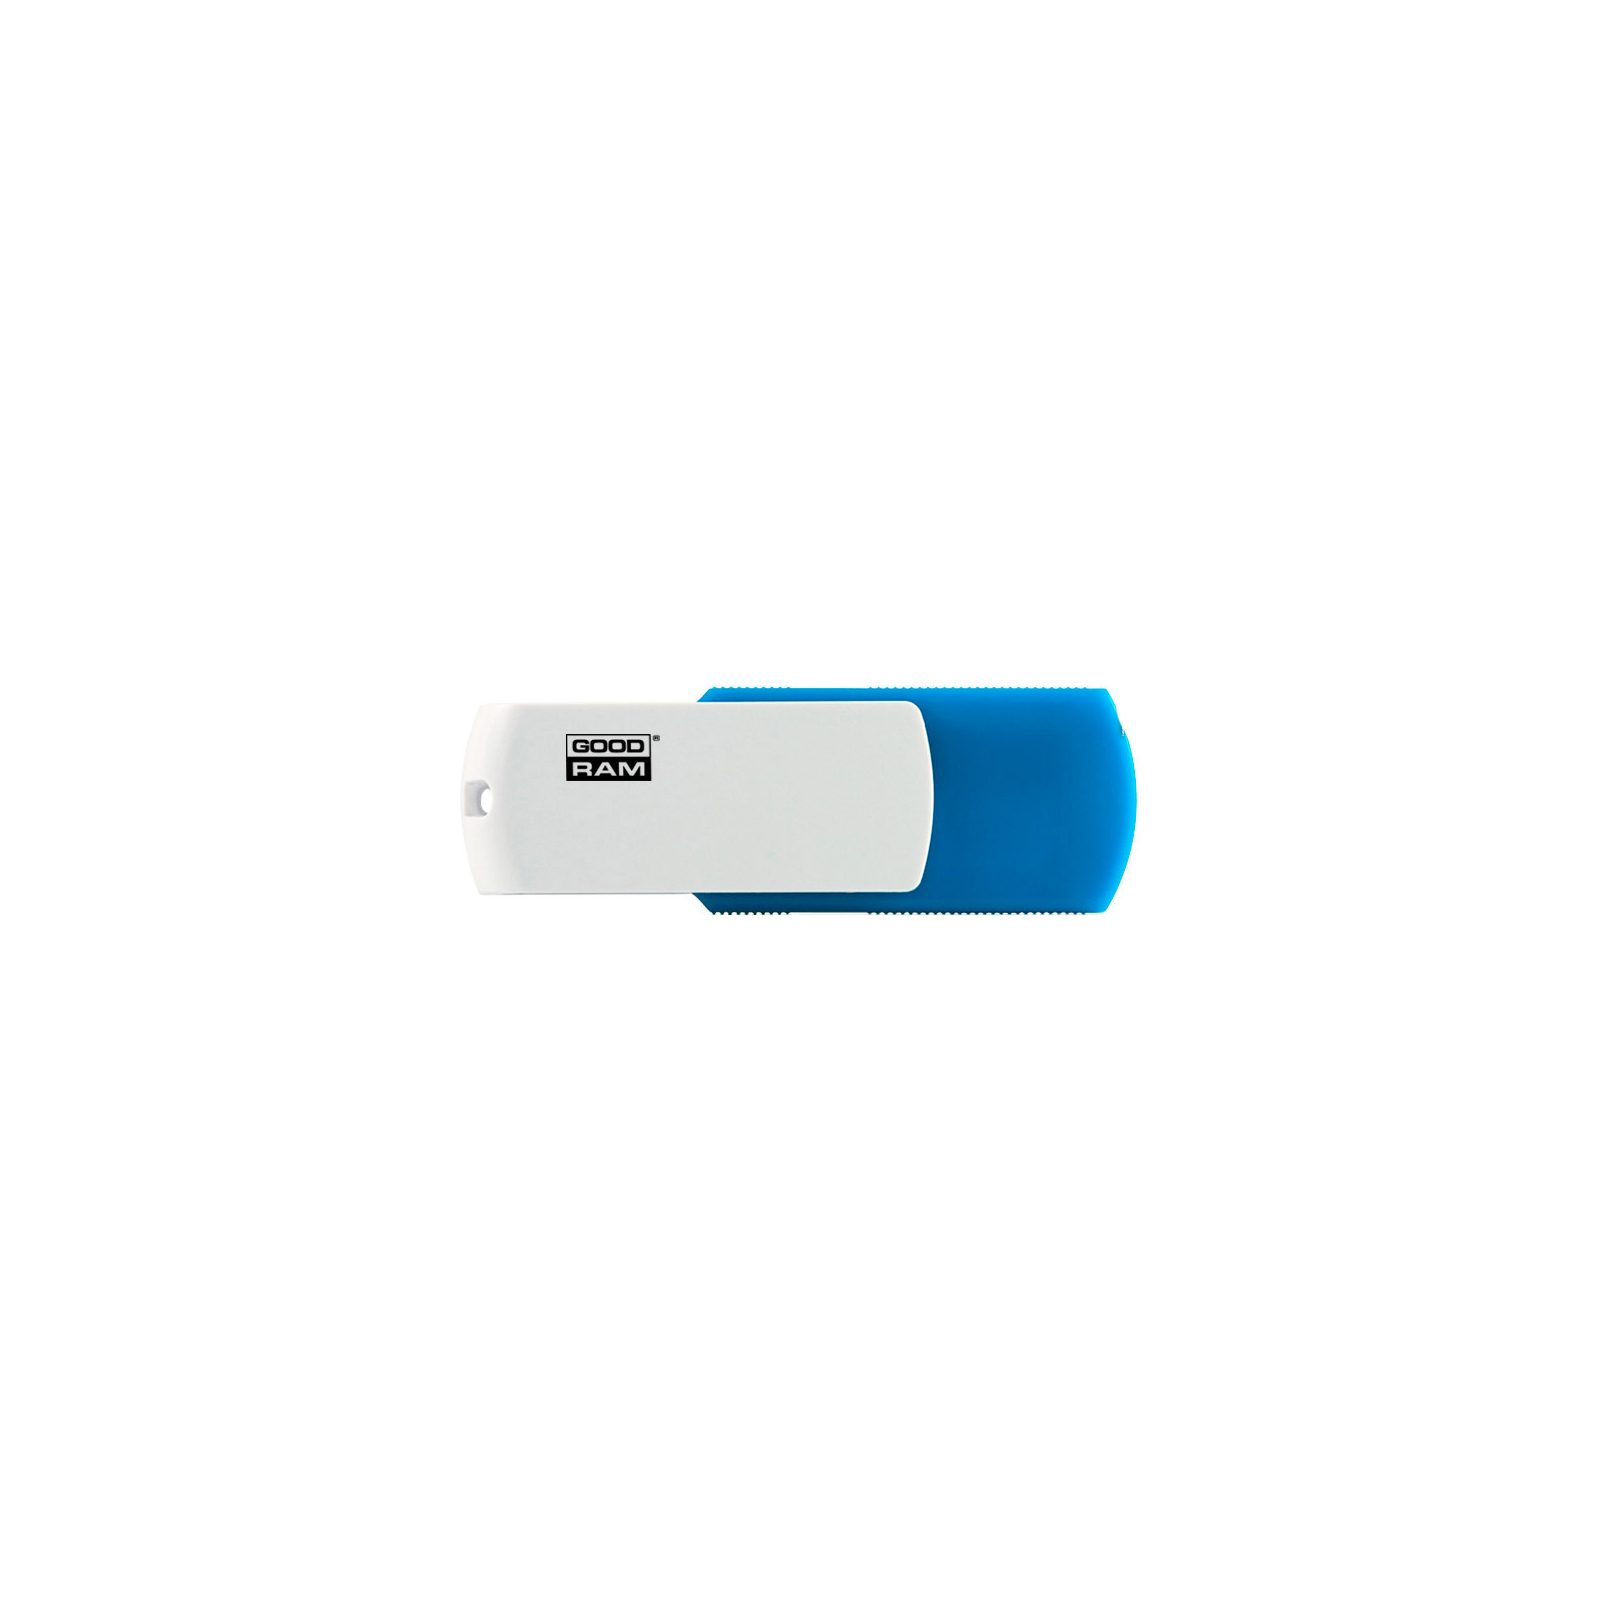 USB флеш накопичувач Goodram 128GB UCO2 Colour Mix USB 2.0 (UCO2-1280MXR11)